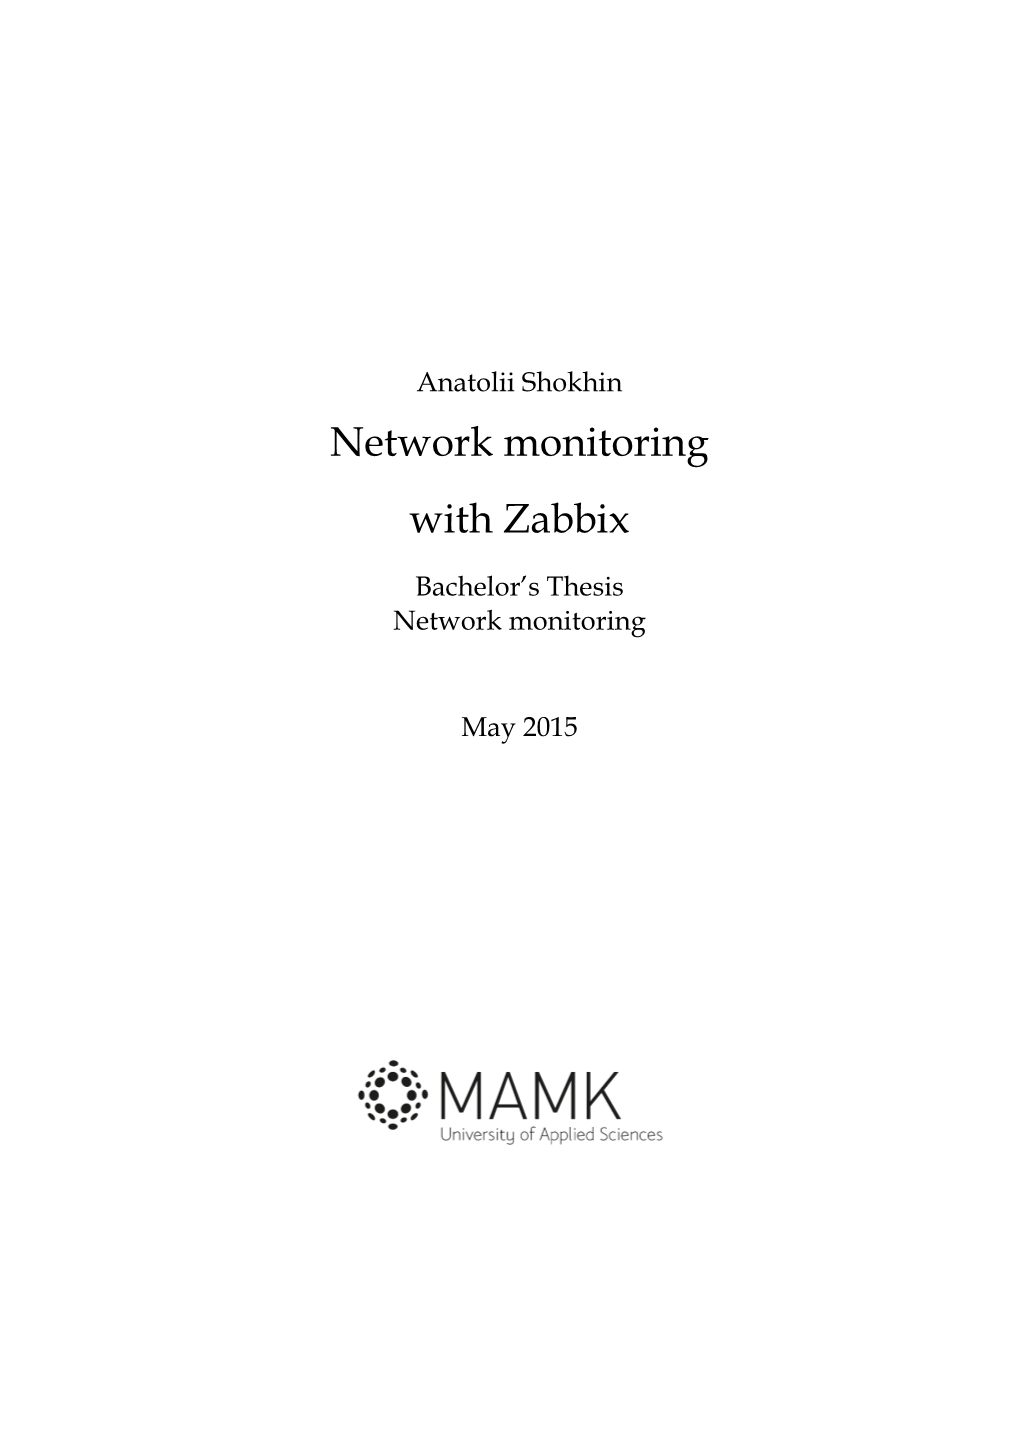 Network Monitoring with Zabbix